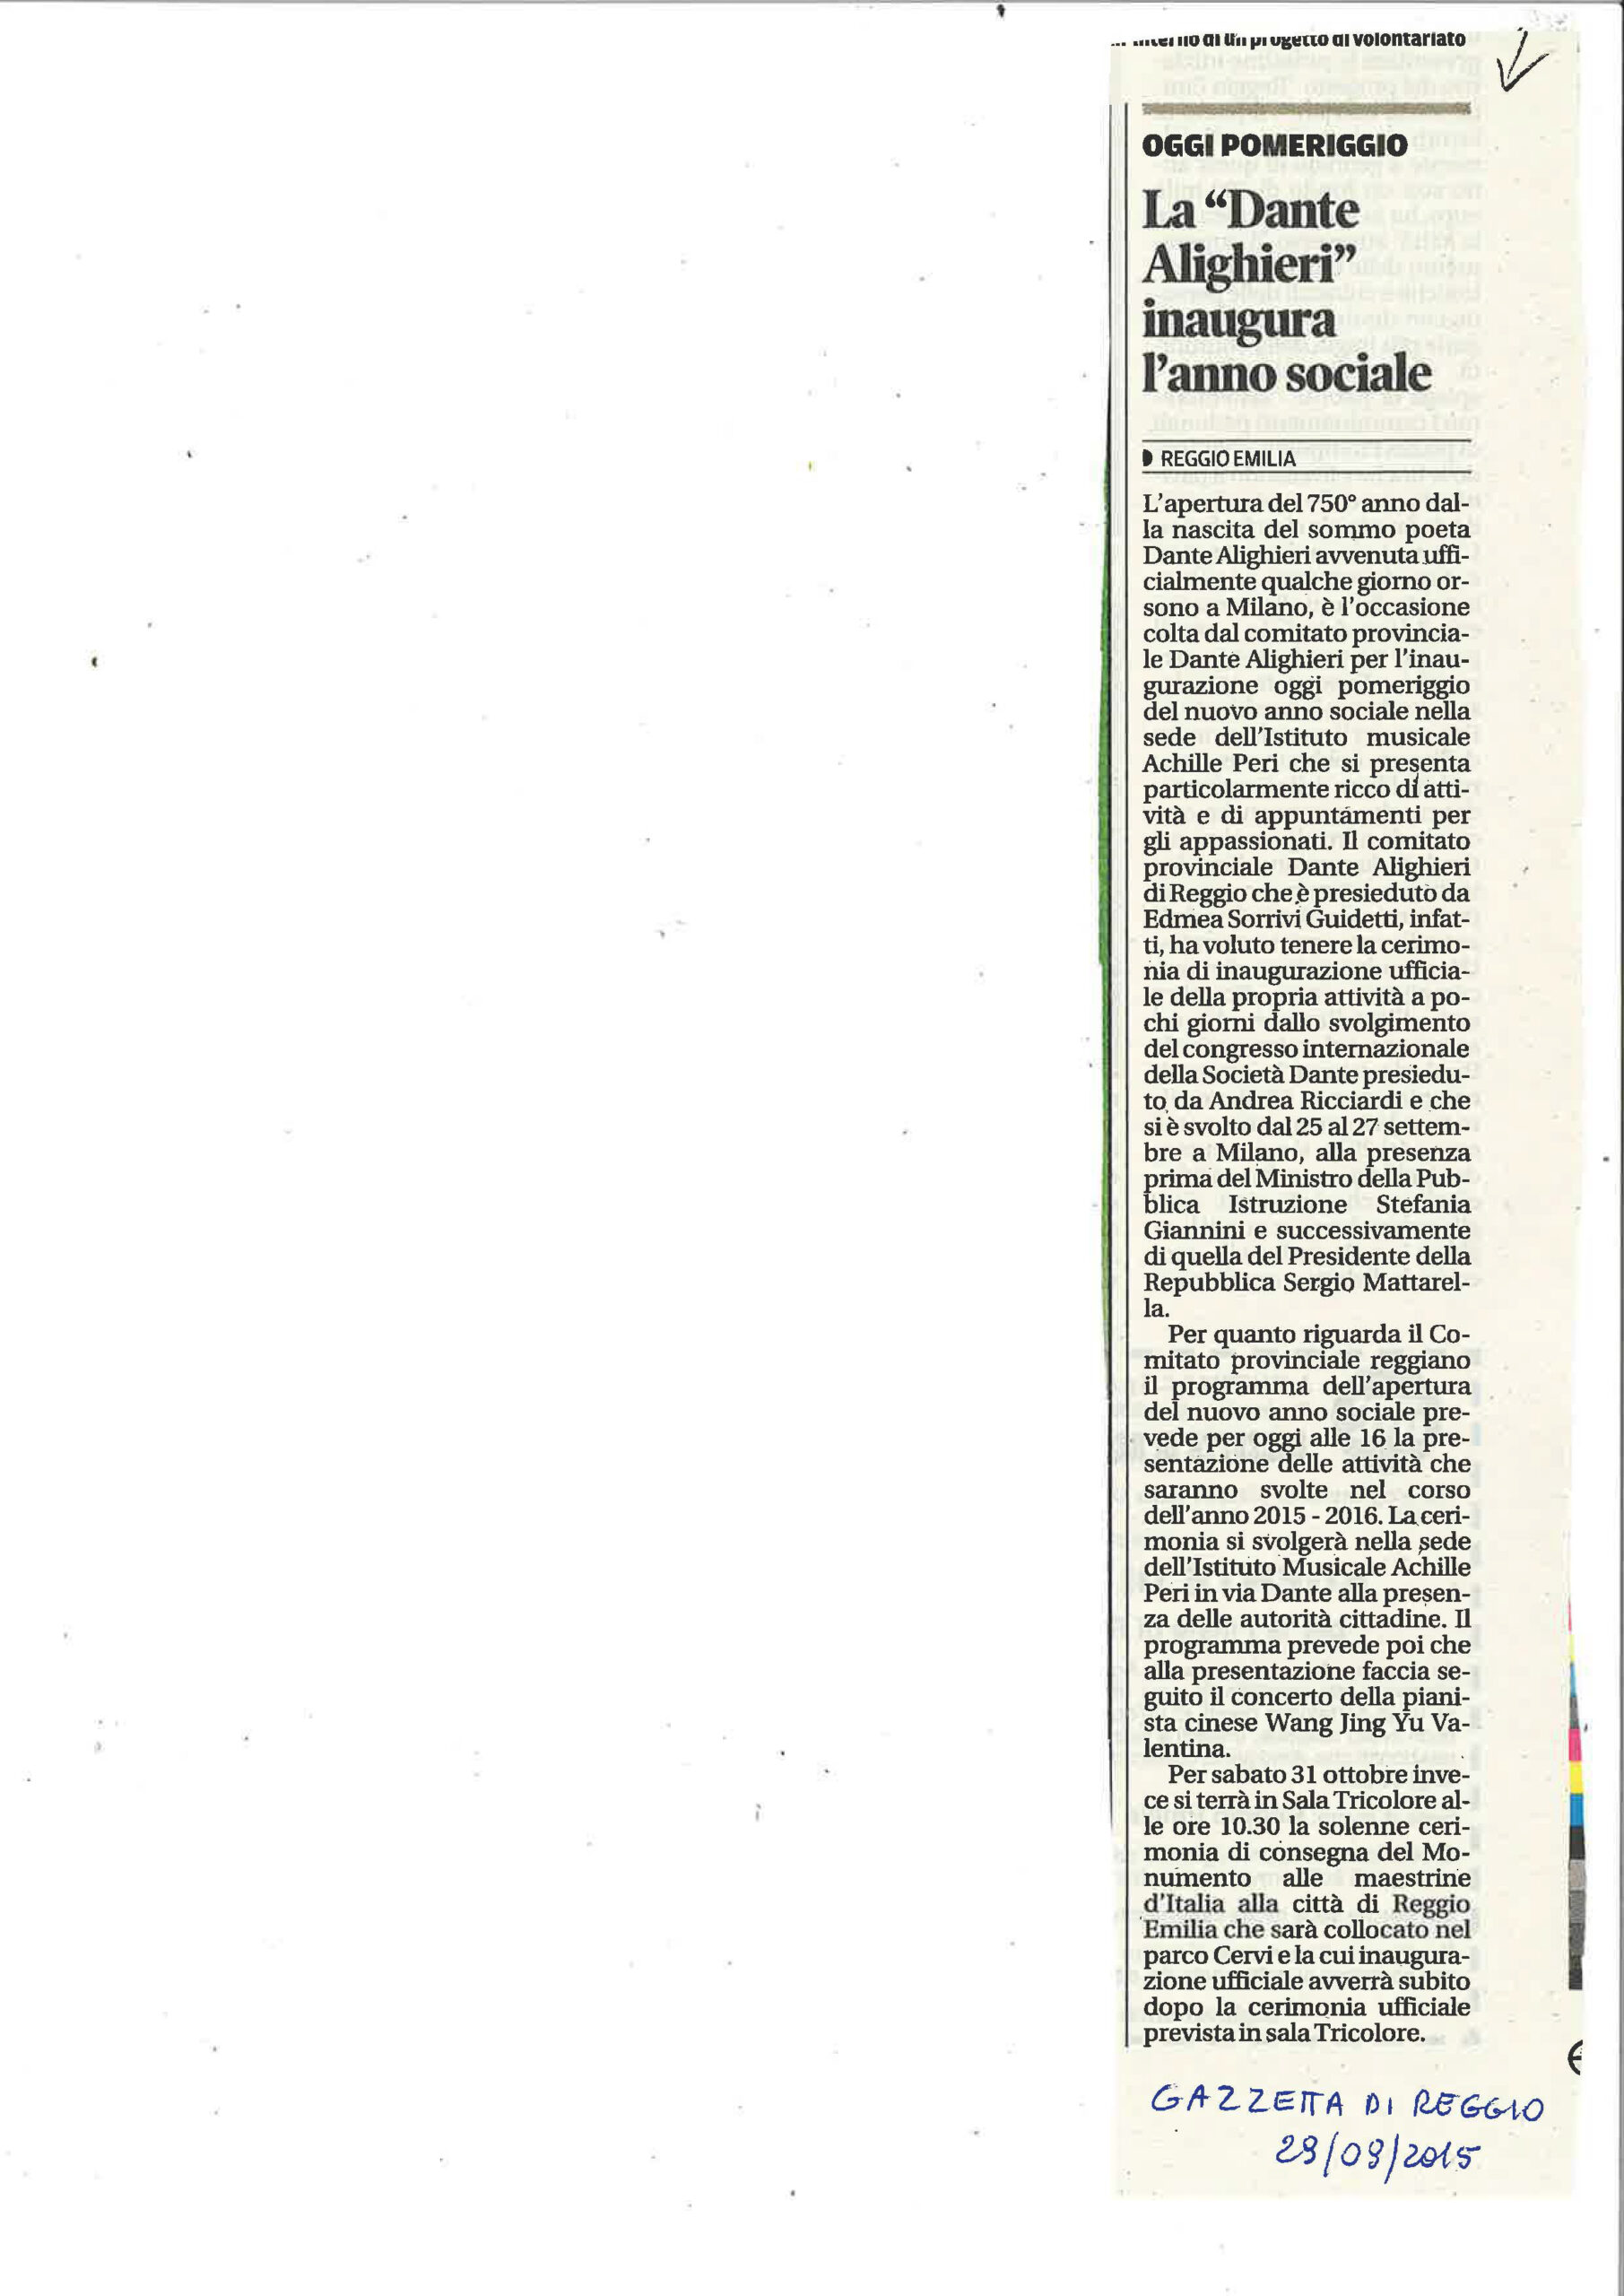 Gazzetta di Reggio 29/29/2015